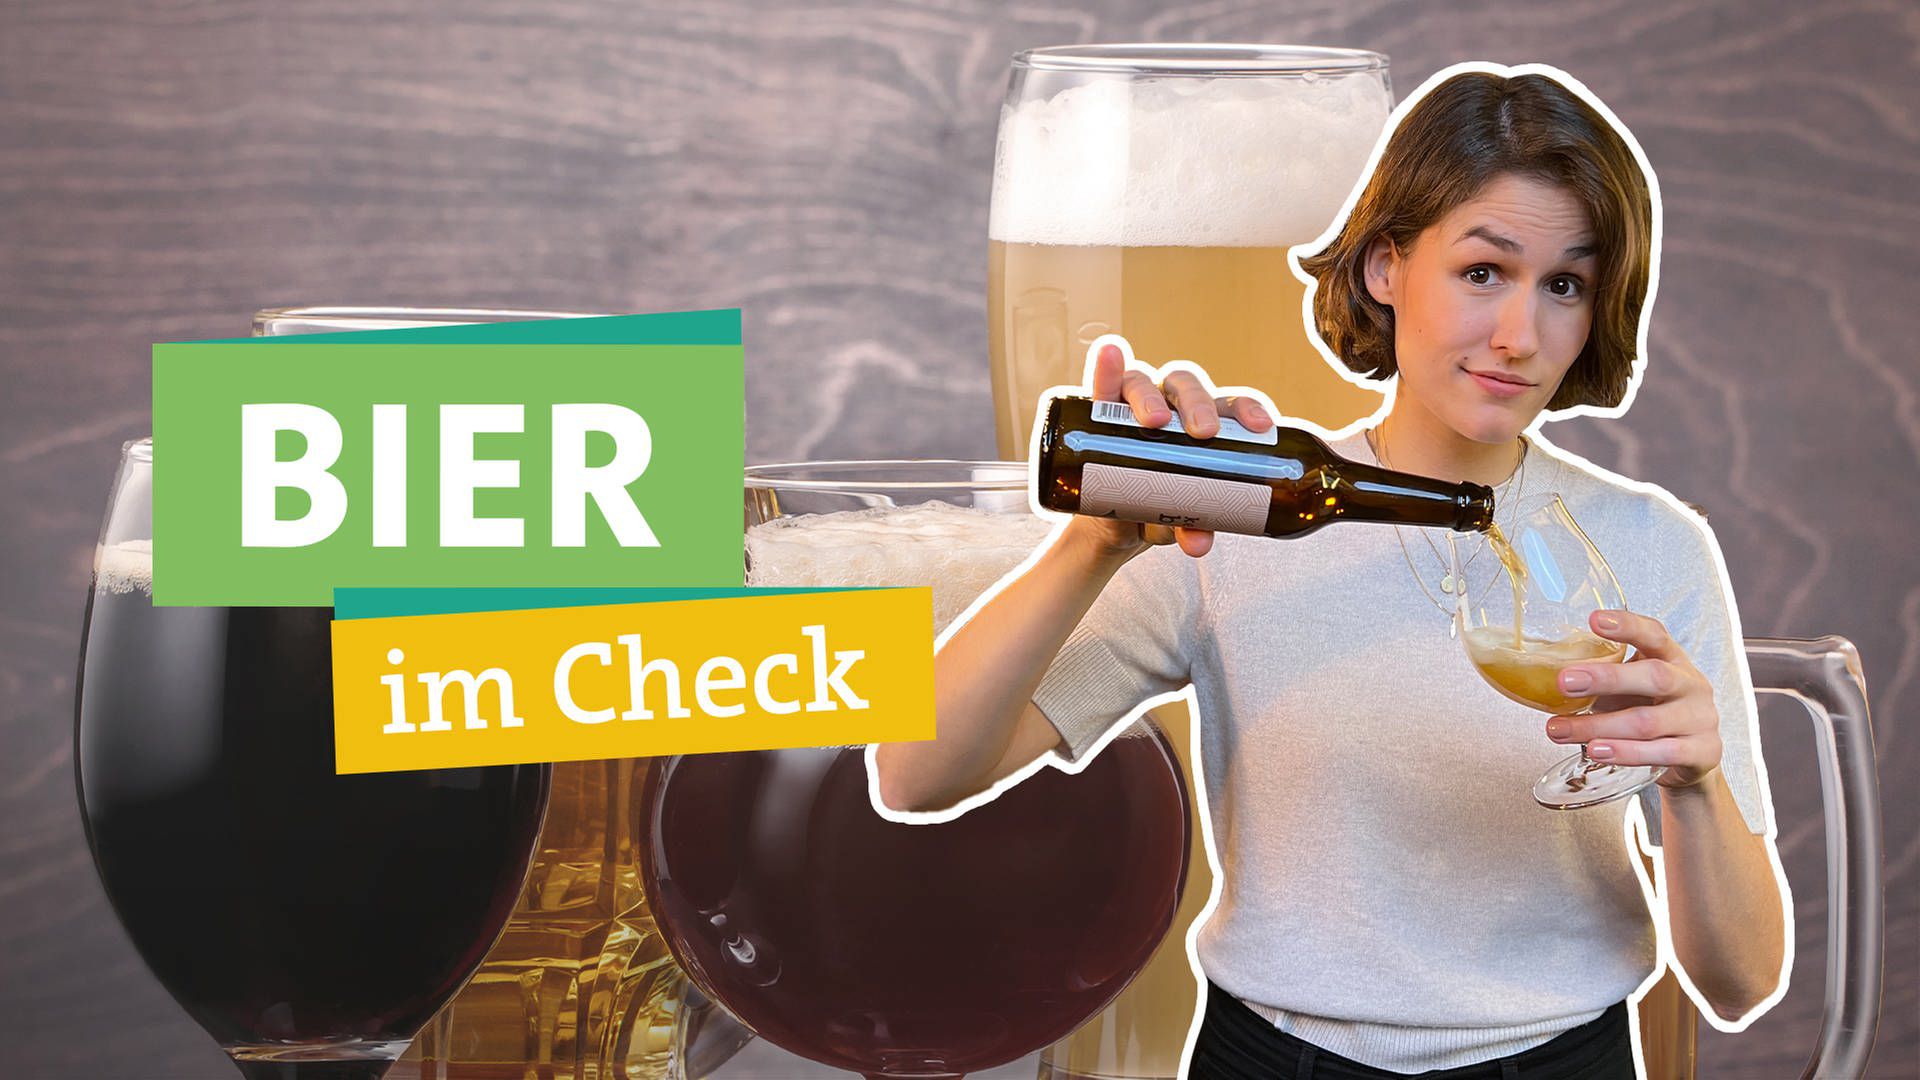 SWR Ökochecker: Craft Beer vs. Großbrauerei - Was ist grüner?